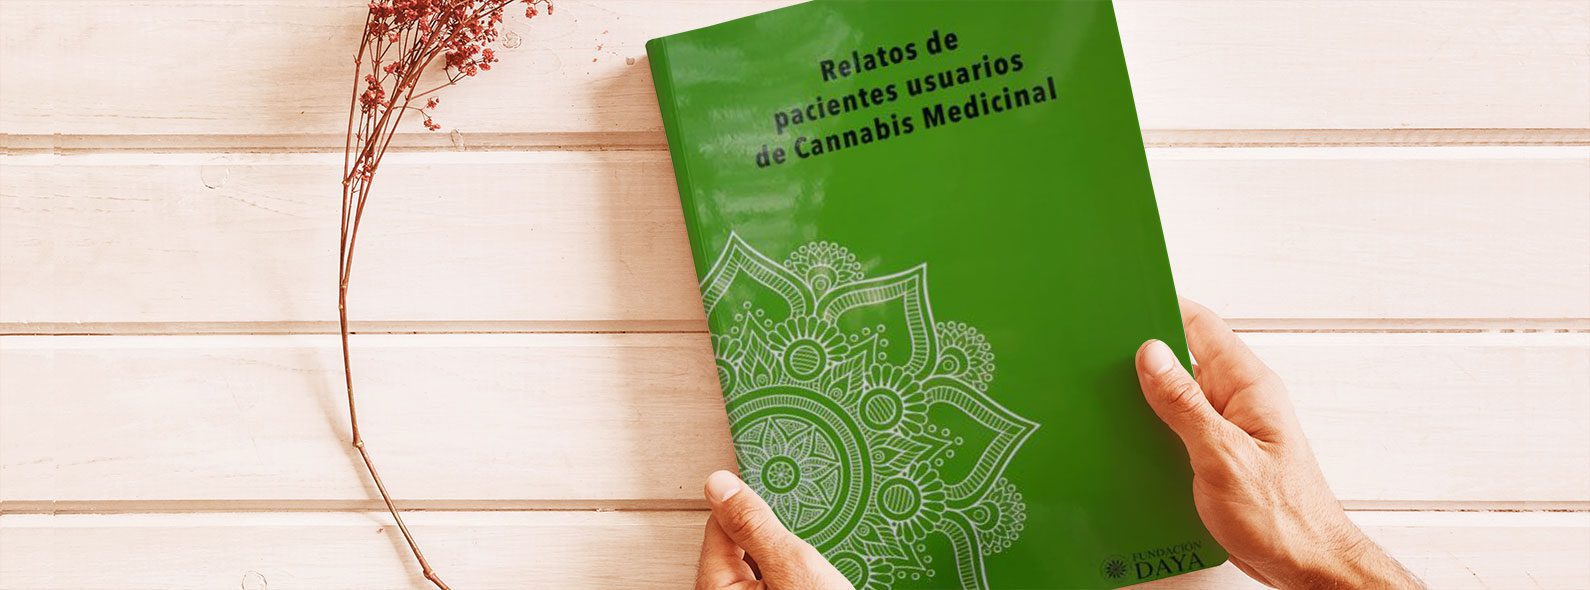 Récits de patients usagers de cannabis médicinal, de la Fondation Daya